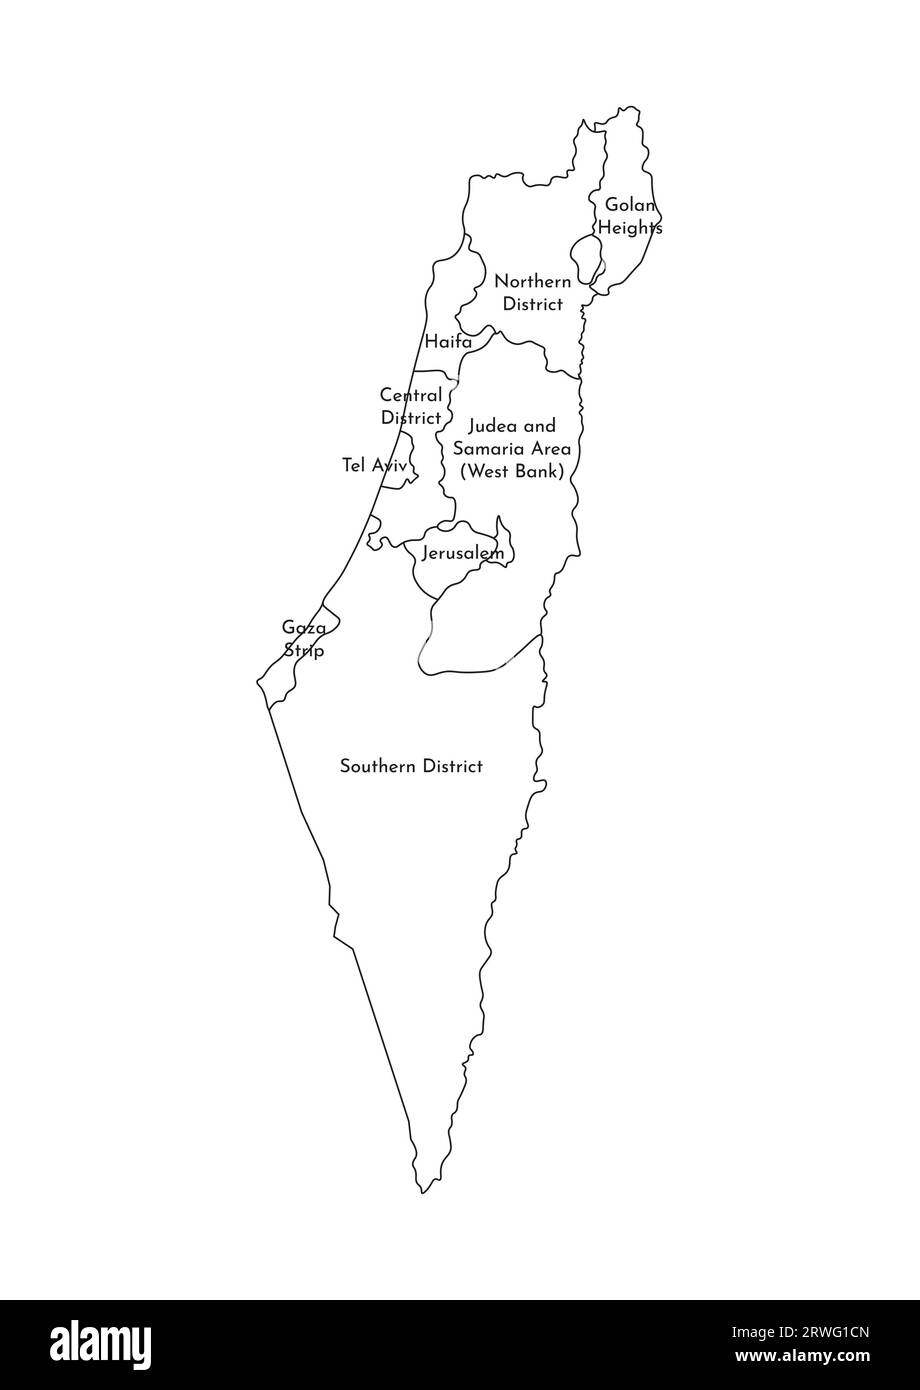 Illustrazione vettoriale isolata della mappa amministrativa semplificata di Israele. Confini e nomi dei distretti (regioni). Silhouette nere. Illustrazione Vettoriale